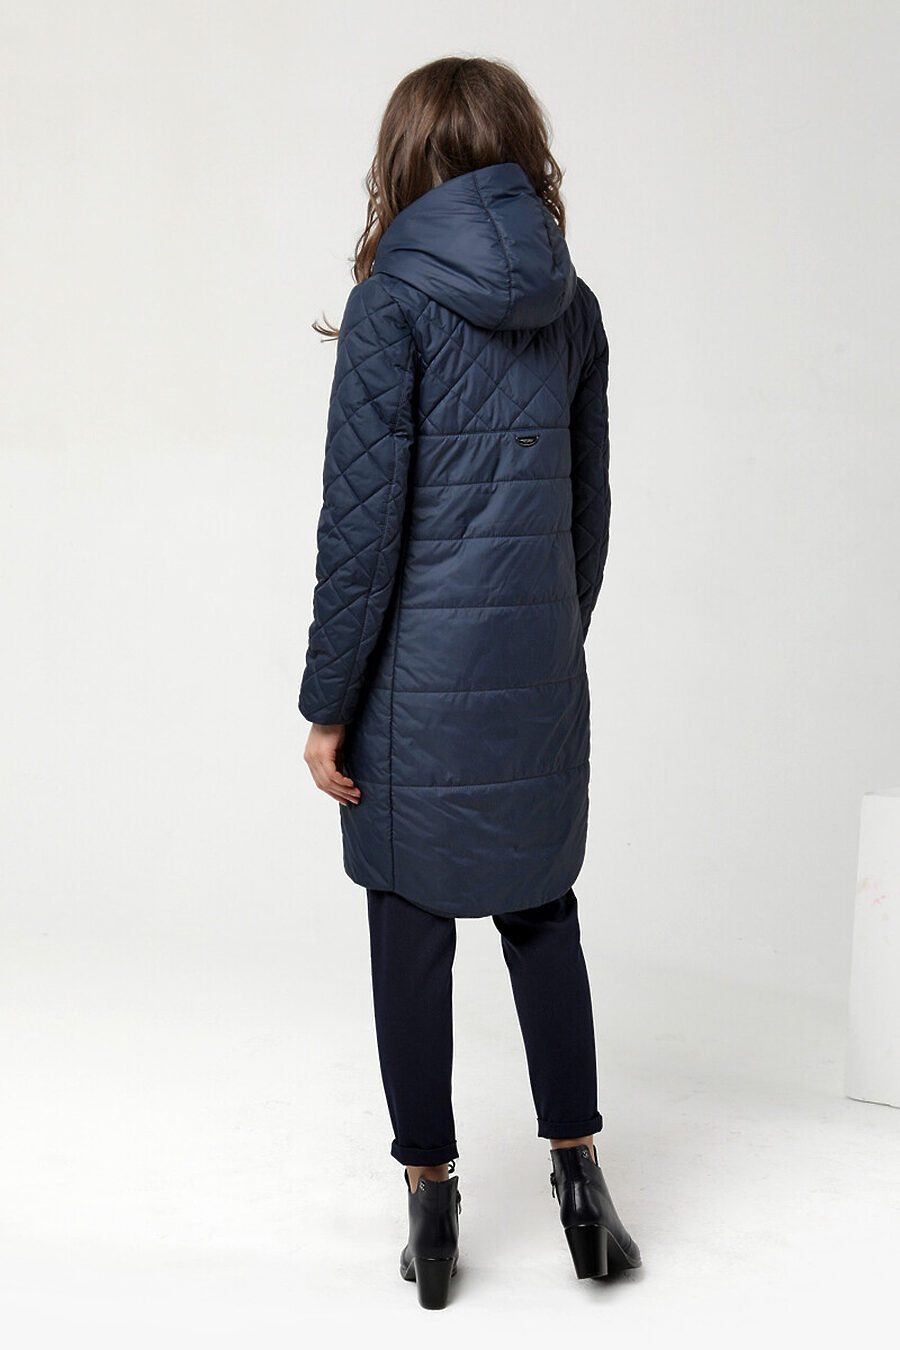 Пальто DIWAY (684806), купить в Moyo.moda